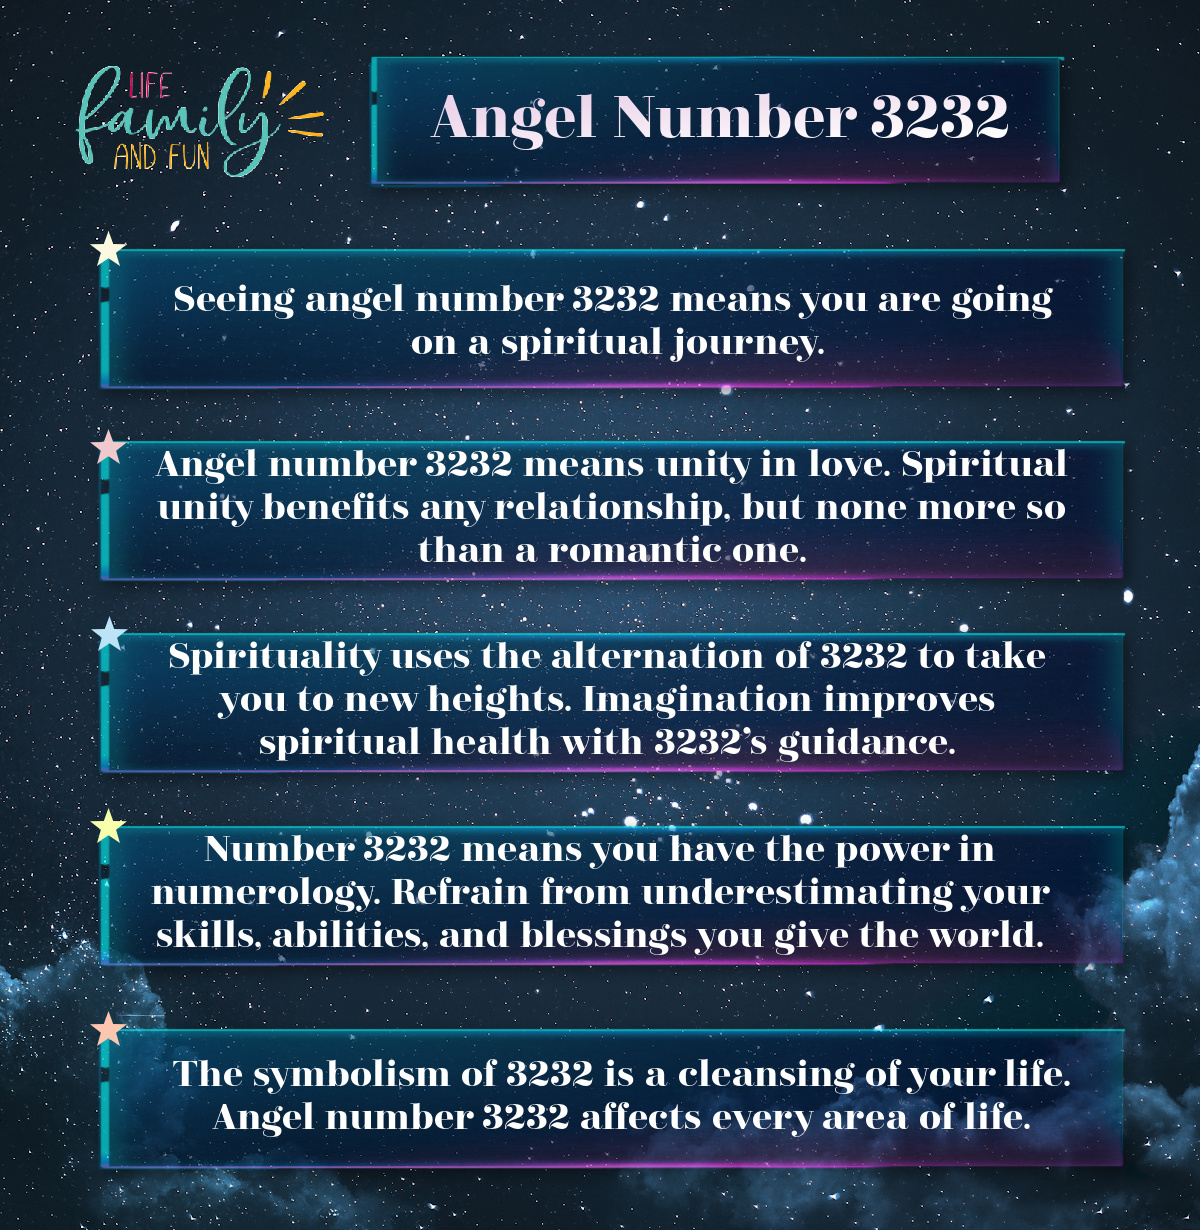 Angel Number 3232